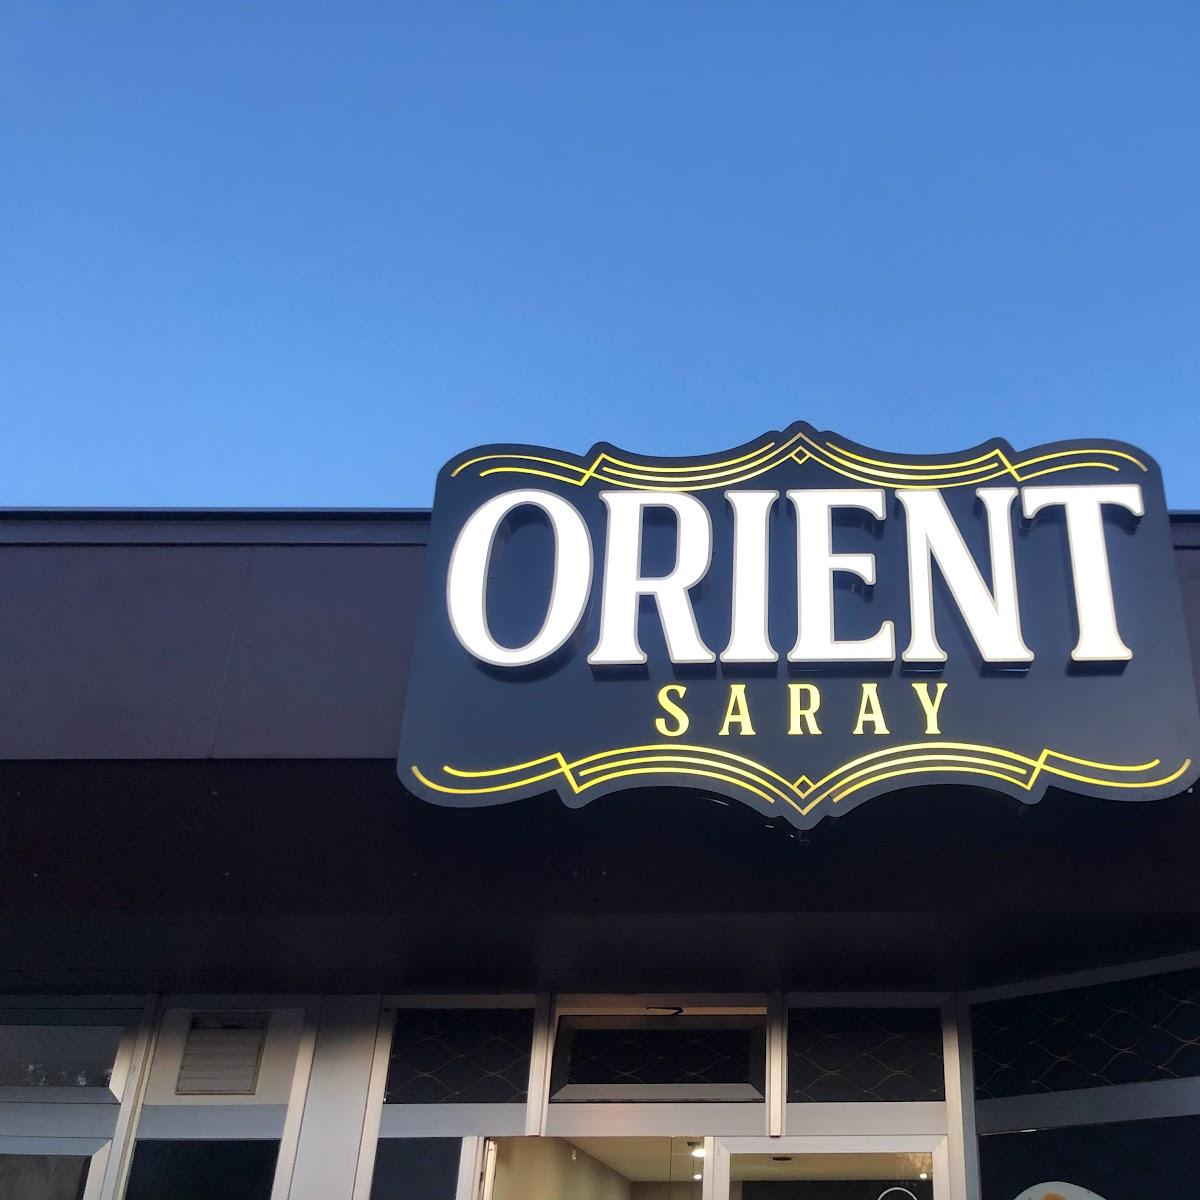 Restaurant "Orient Saray" in Duisburg